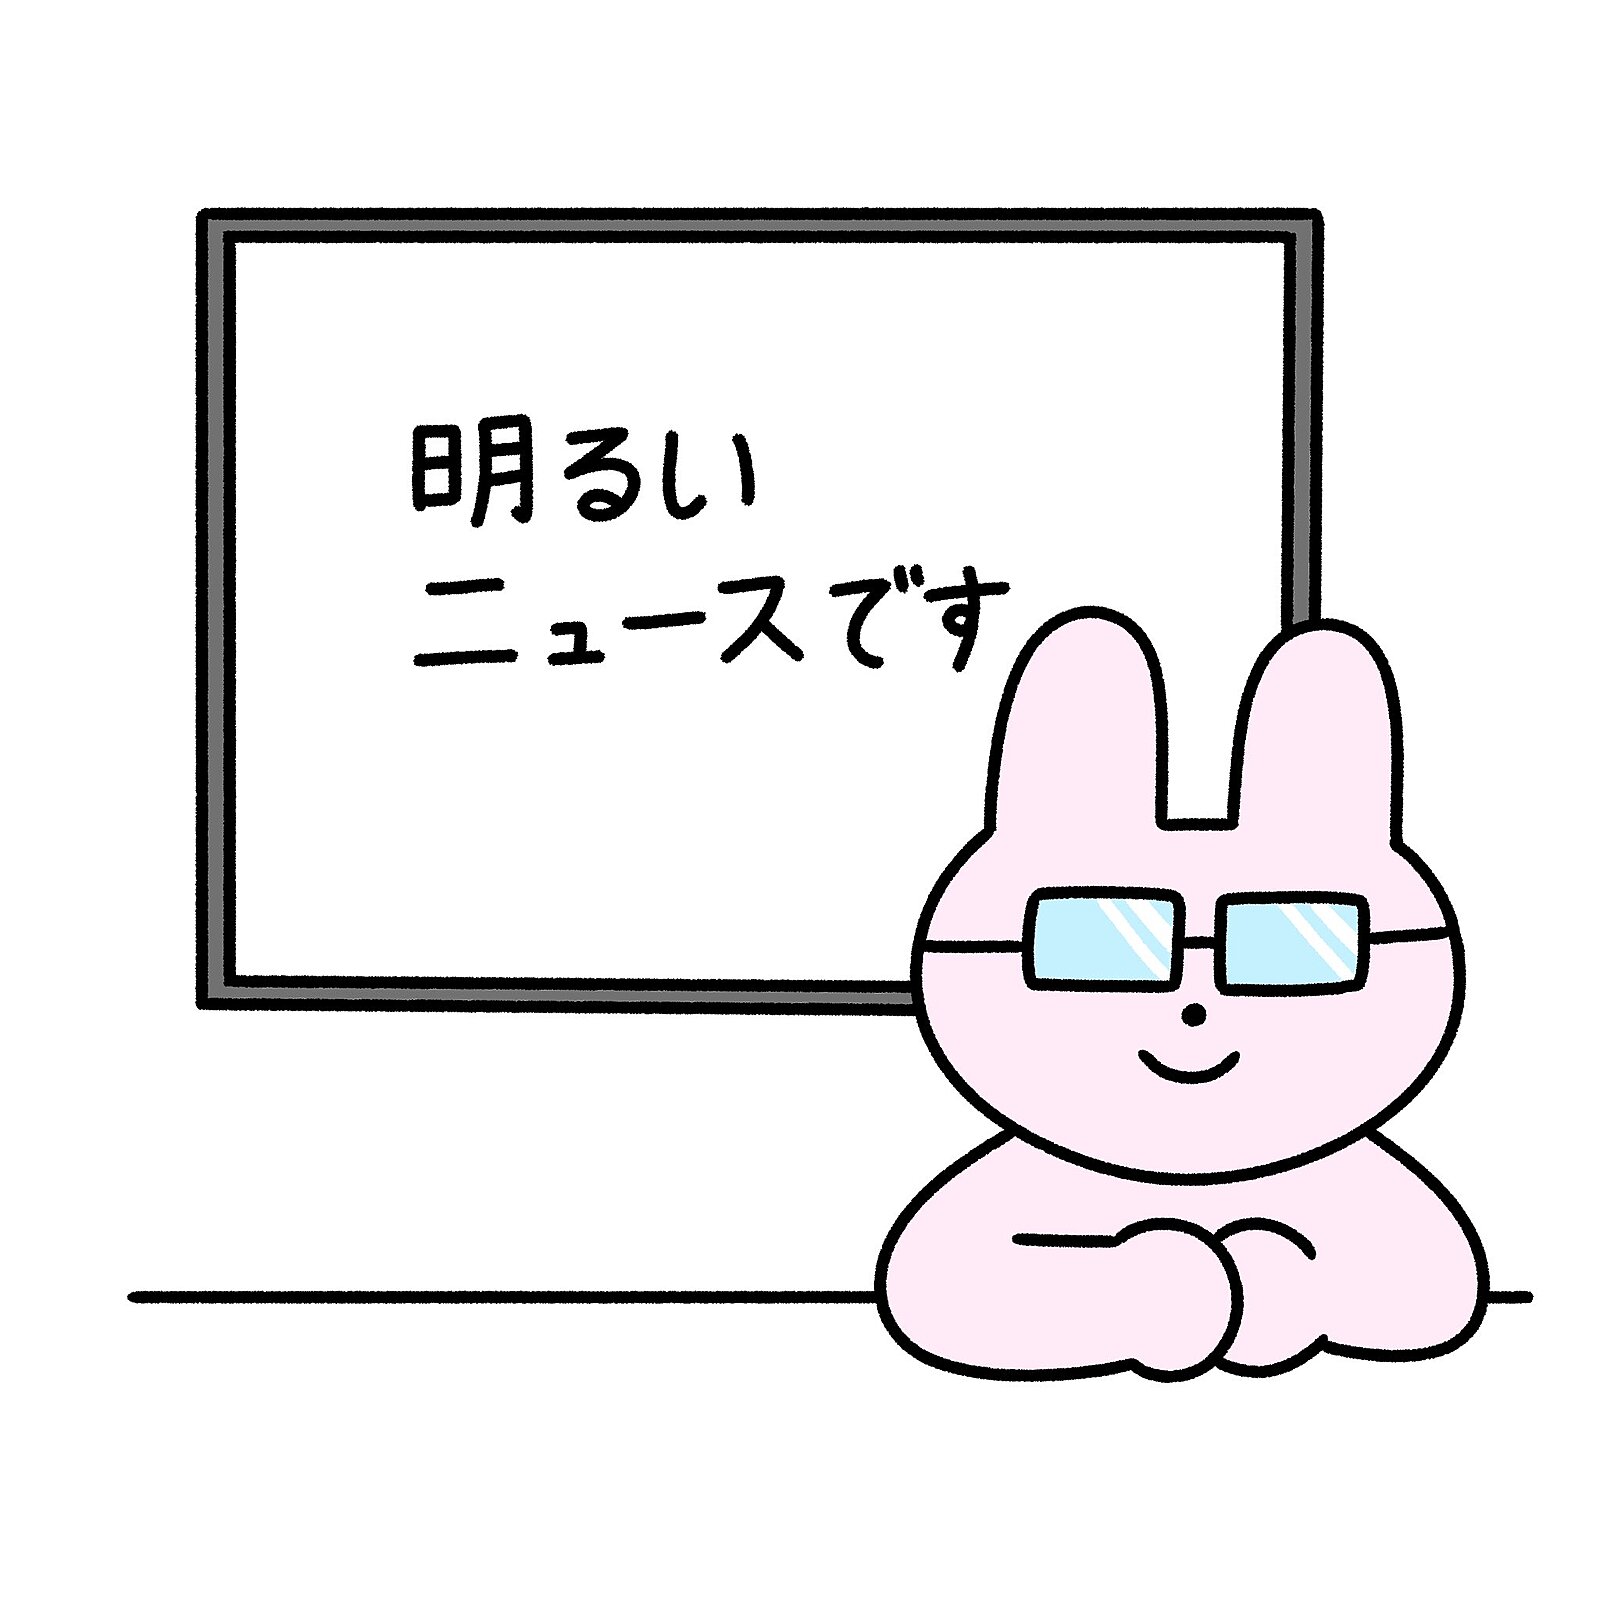 【ガチ朝活】1/12(金)7時博多 ポジティブニュースを語ろう会